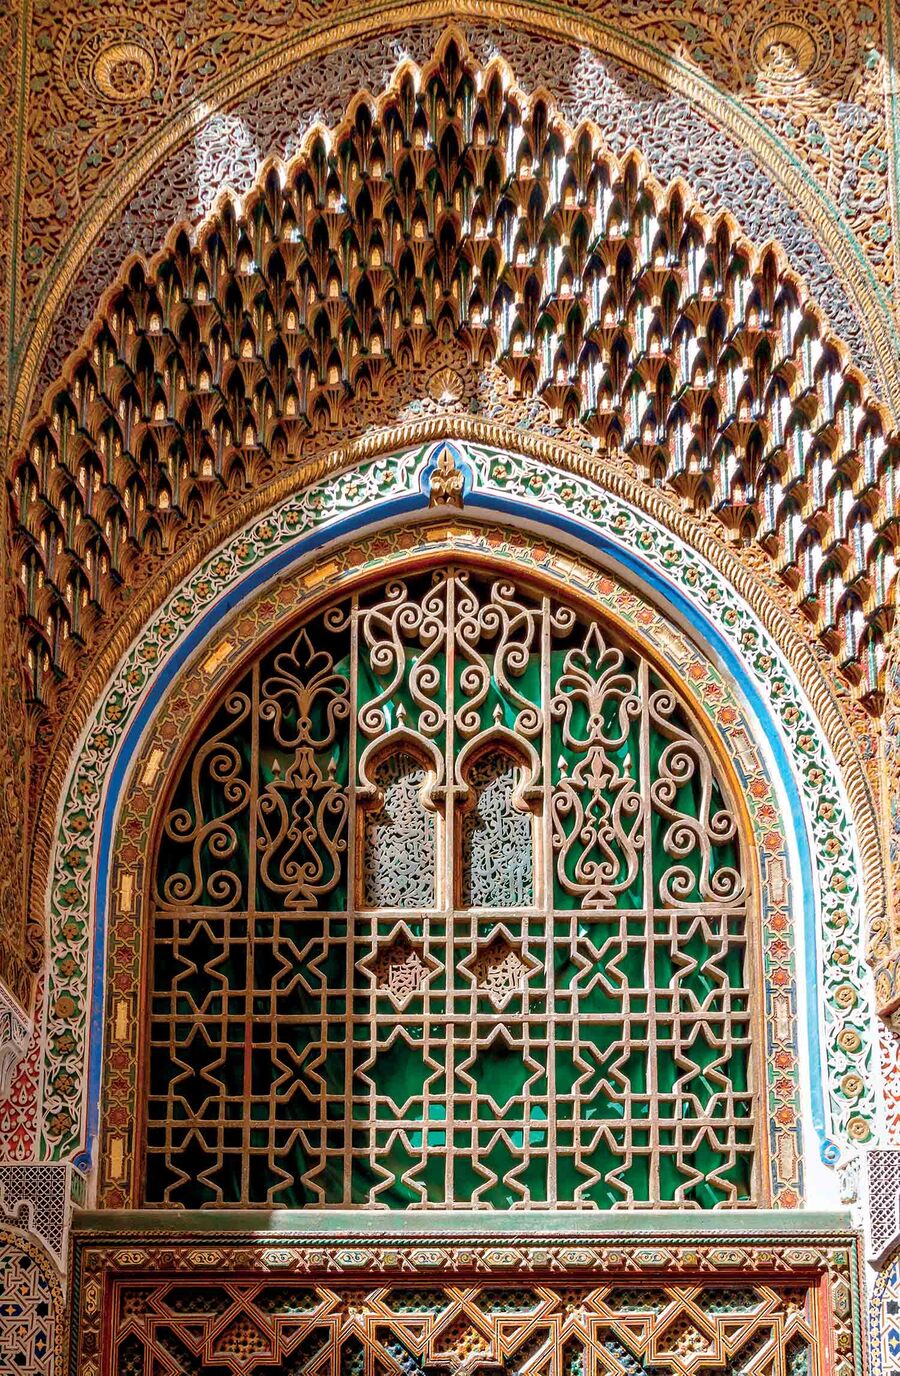 Khung cửa của Đại học Al Quaraouiyine tại Fez. UNESCO ghi nhận đây là trường đại học lâu đời nhất thế giới, ra đời năm 859.